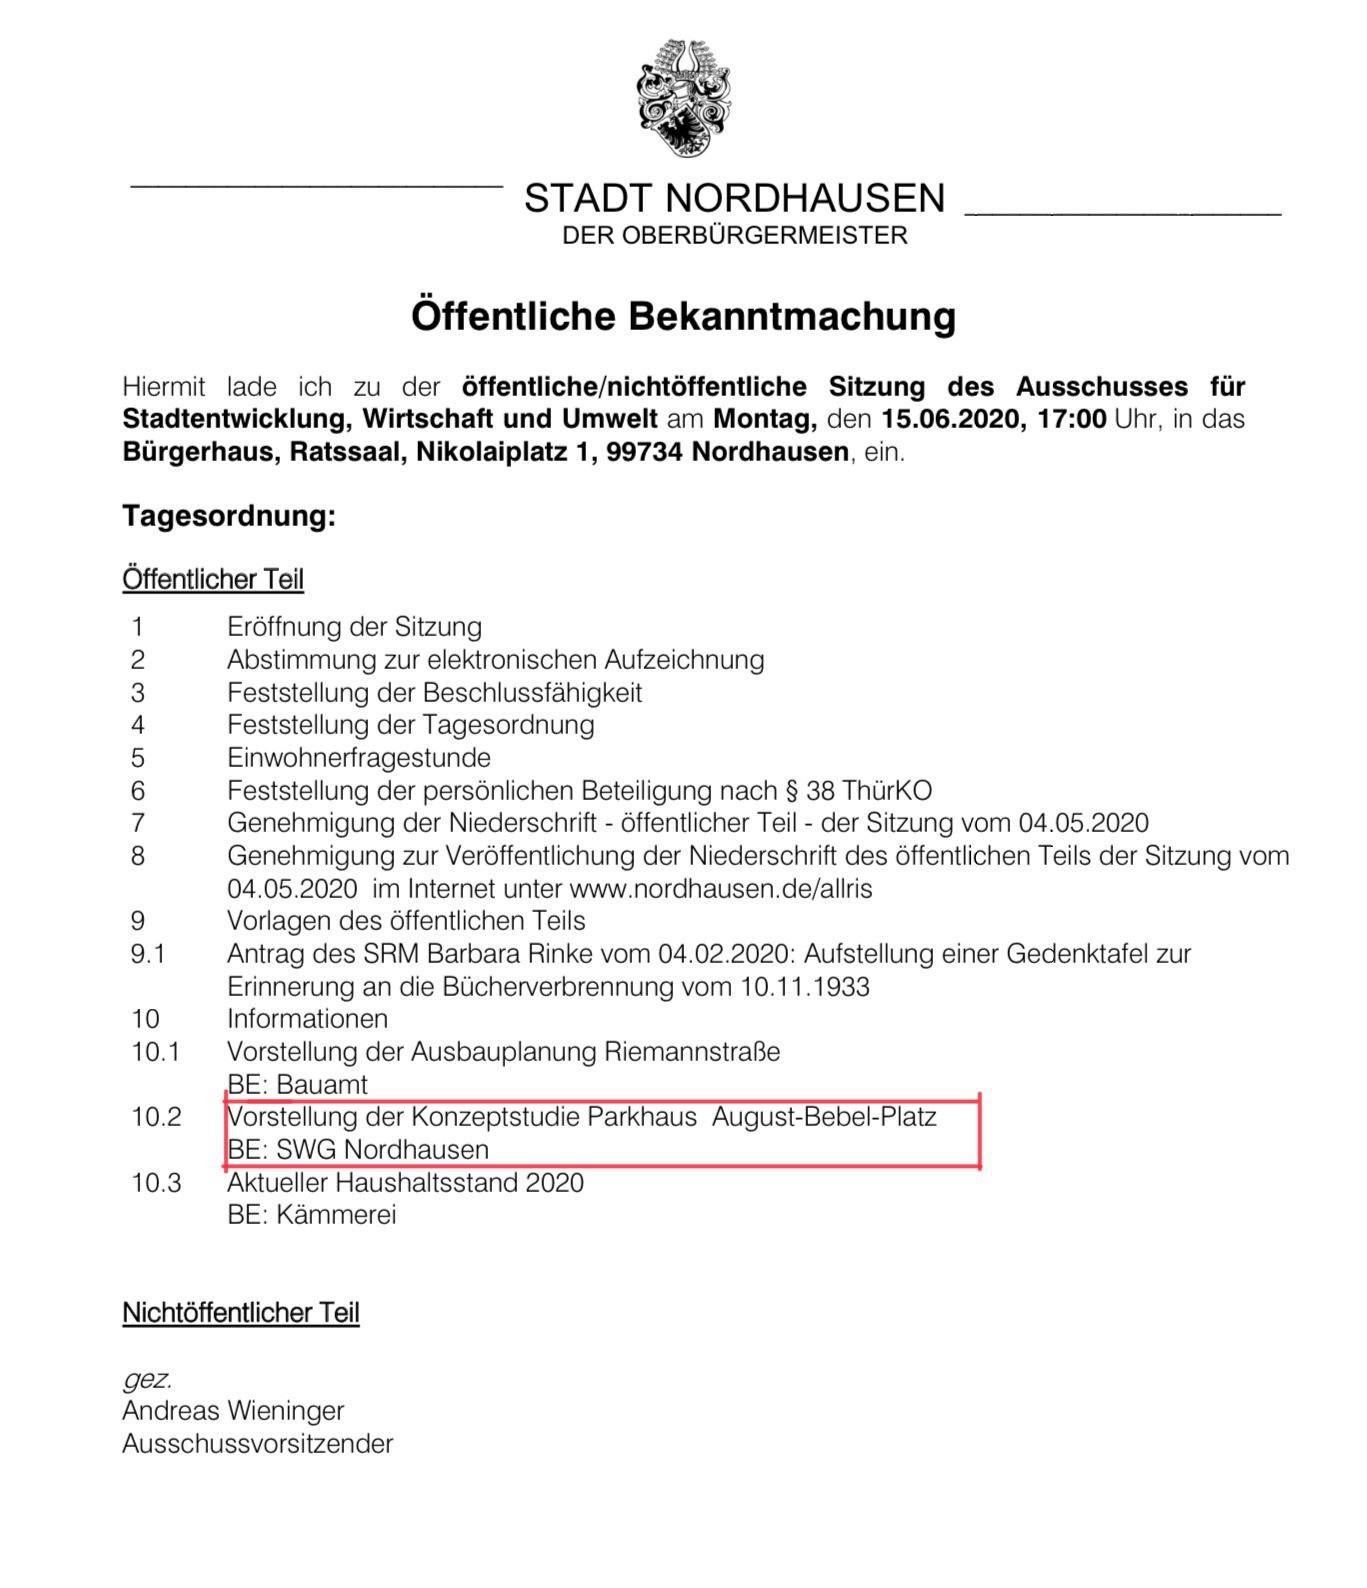 Tagesordnung Ausschuss für Stadtentwicklung Nordhausen vom 15.06.2020